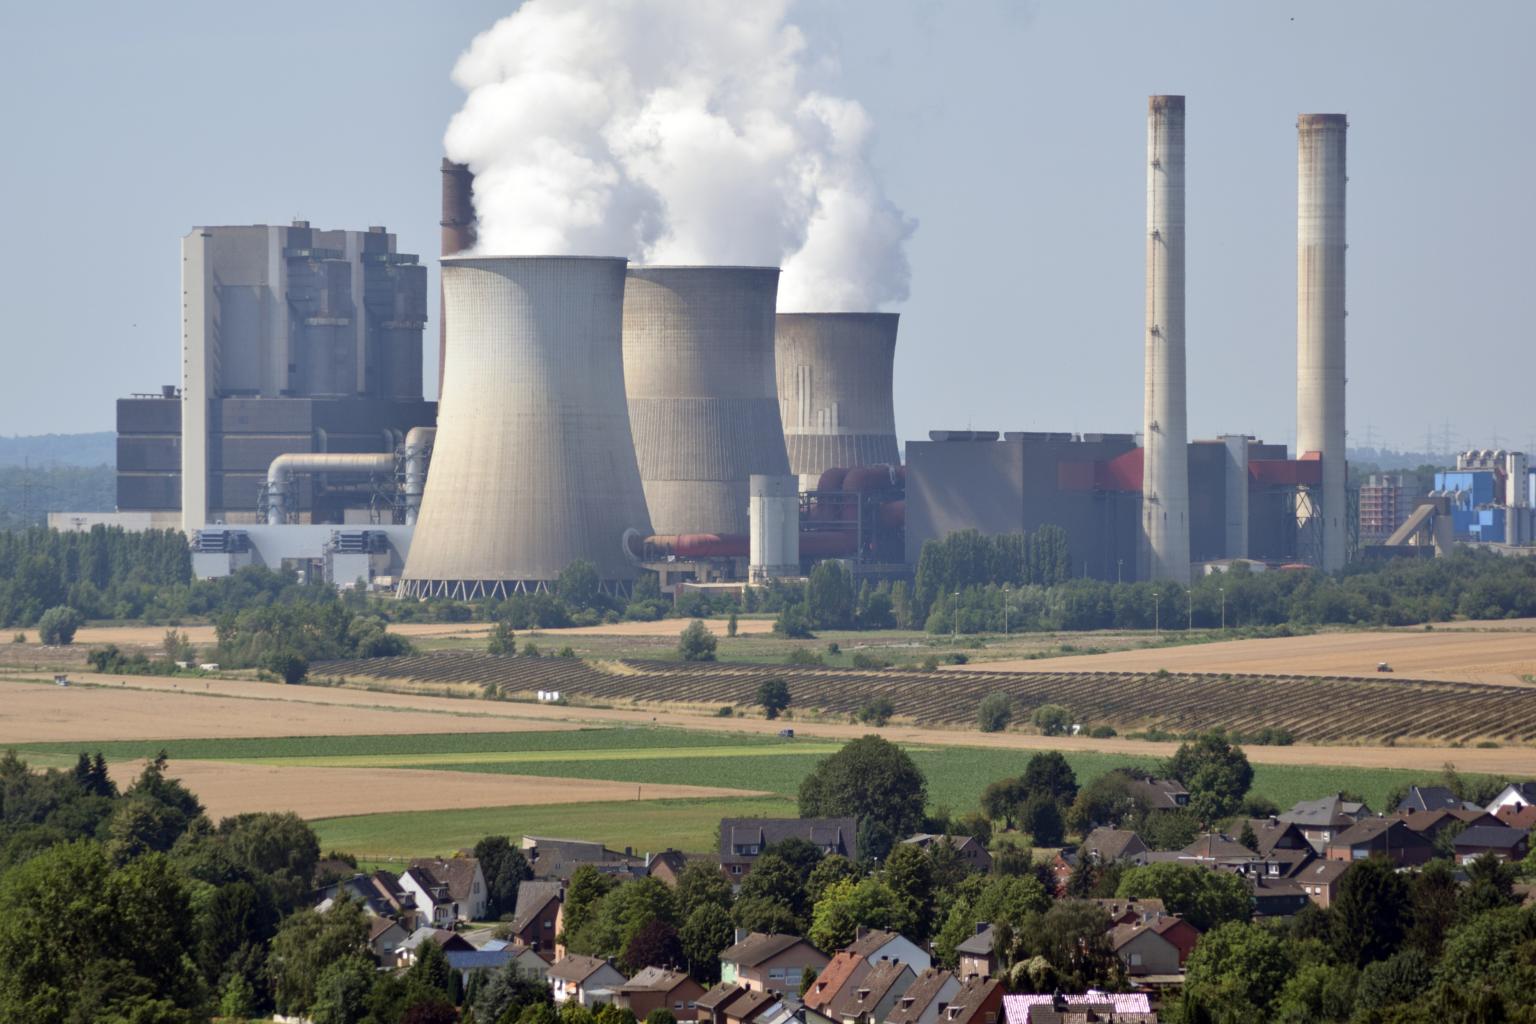 Kohlekraftwerke wie das Weisweiler stehen bei Klimaschützern in der Kritik. Wie lässt sich ein Gesamtkonzept für den regionalen Strukturwandel entwickeln? (c) Thomas Hohenschue